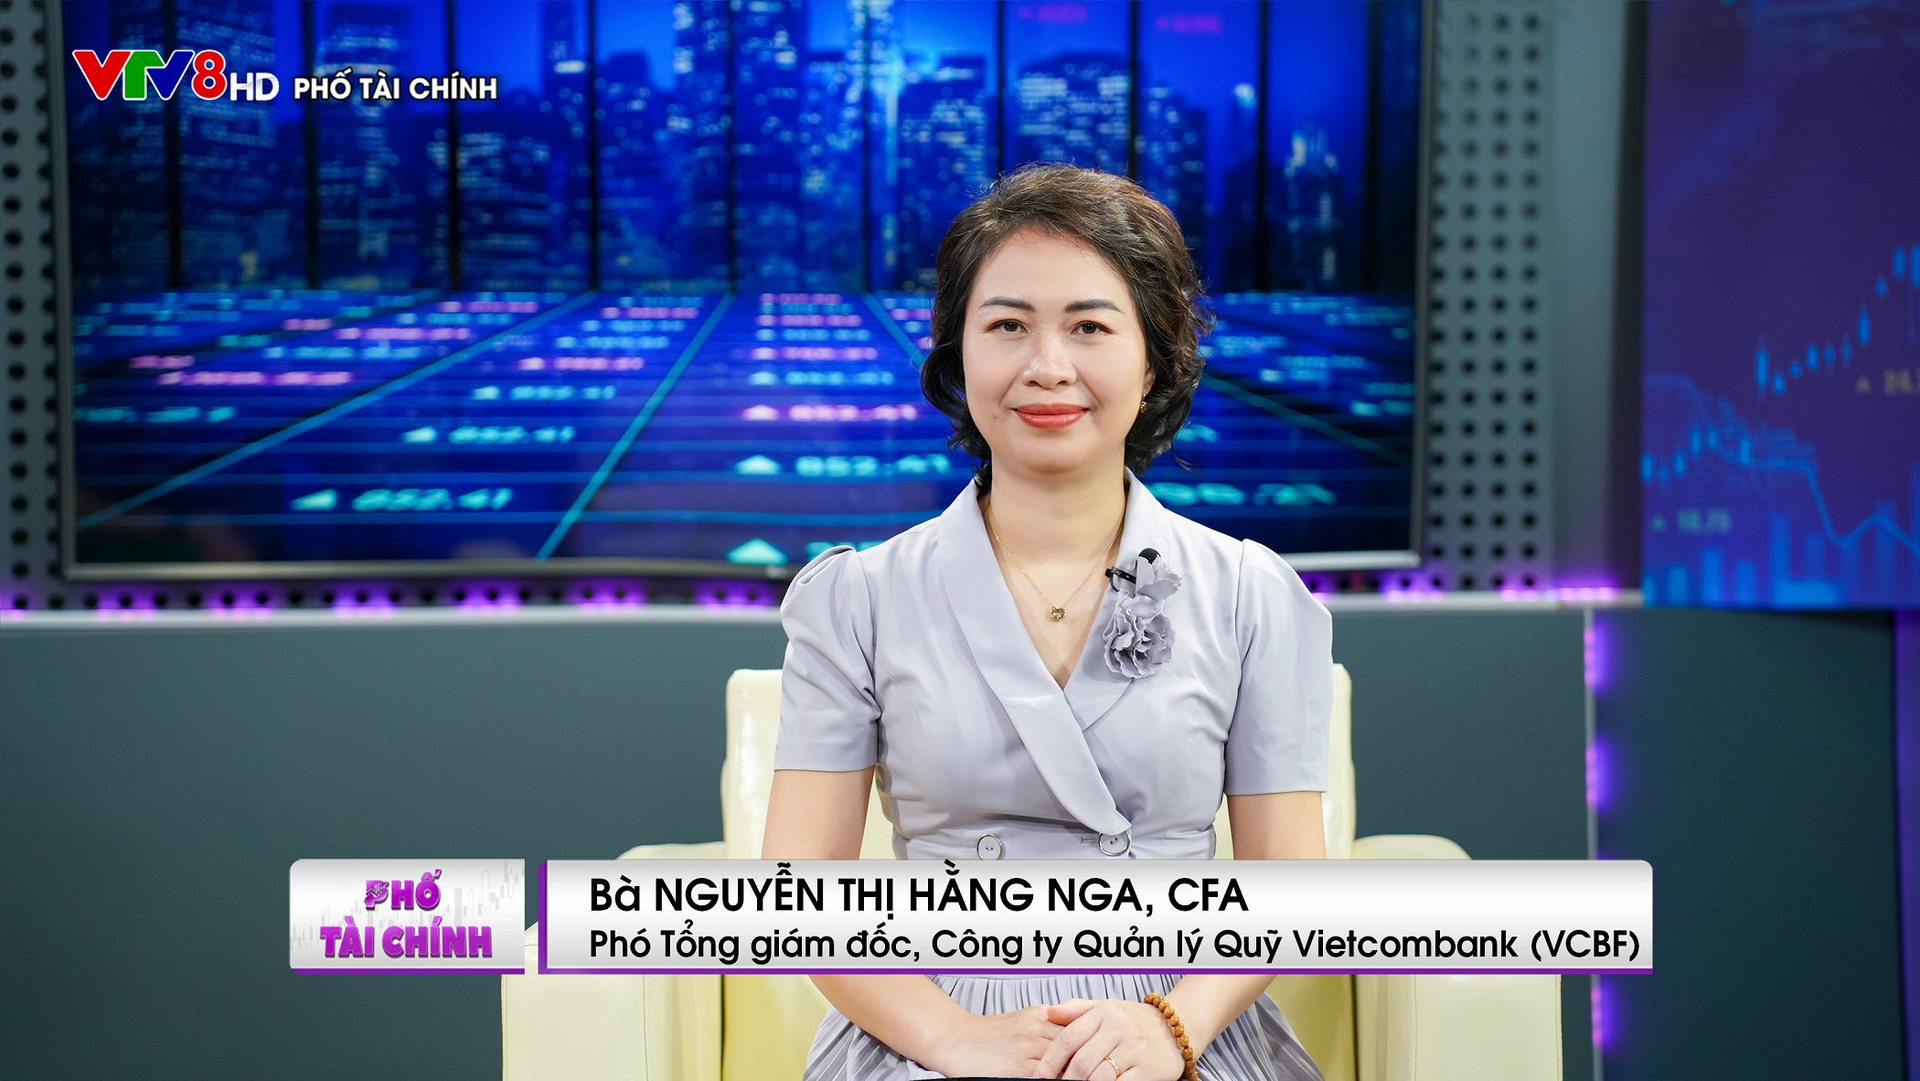 Phó Tổng giám đốc VCBF: Tiềm năng ngành quản lý quỹ ở Việt Nam còn rất lớn. - Ảnh 3.